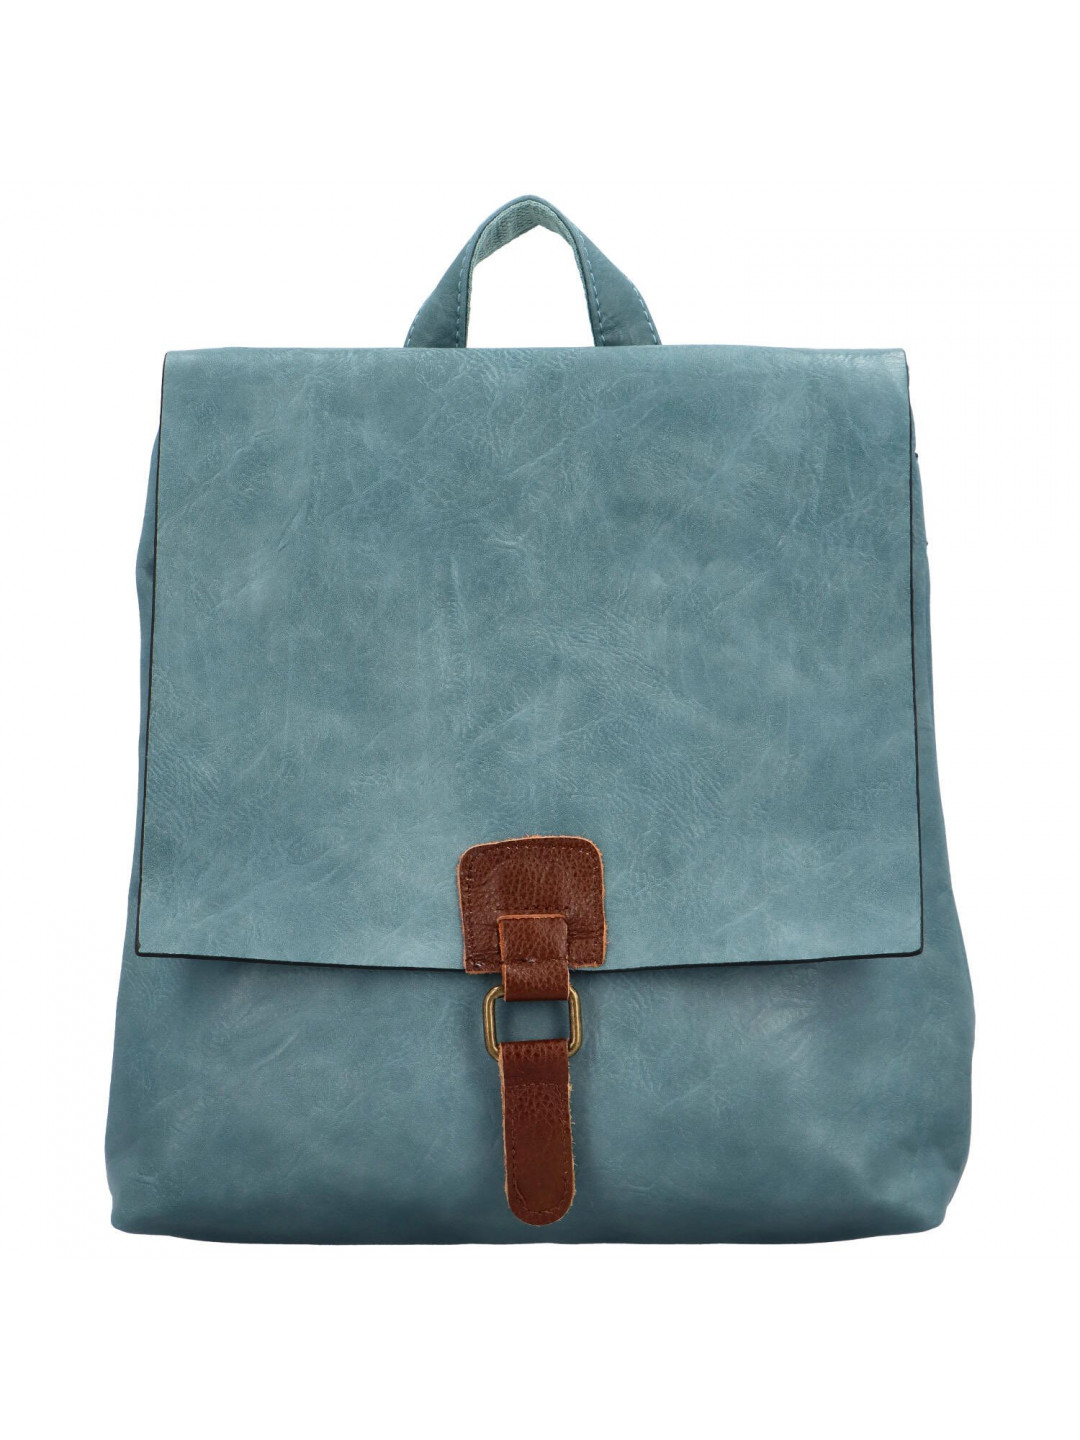 Dámský kabelko batoh džínově modrý – Paolo bags Olefir